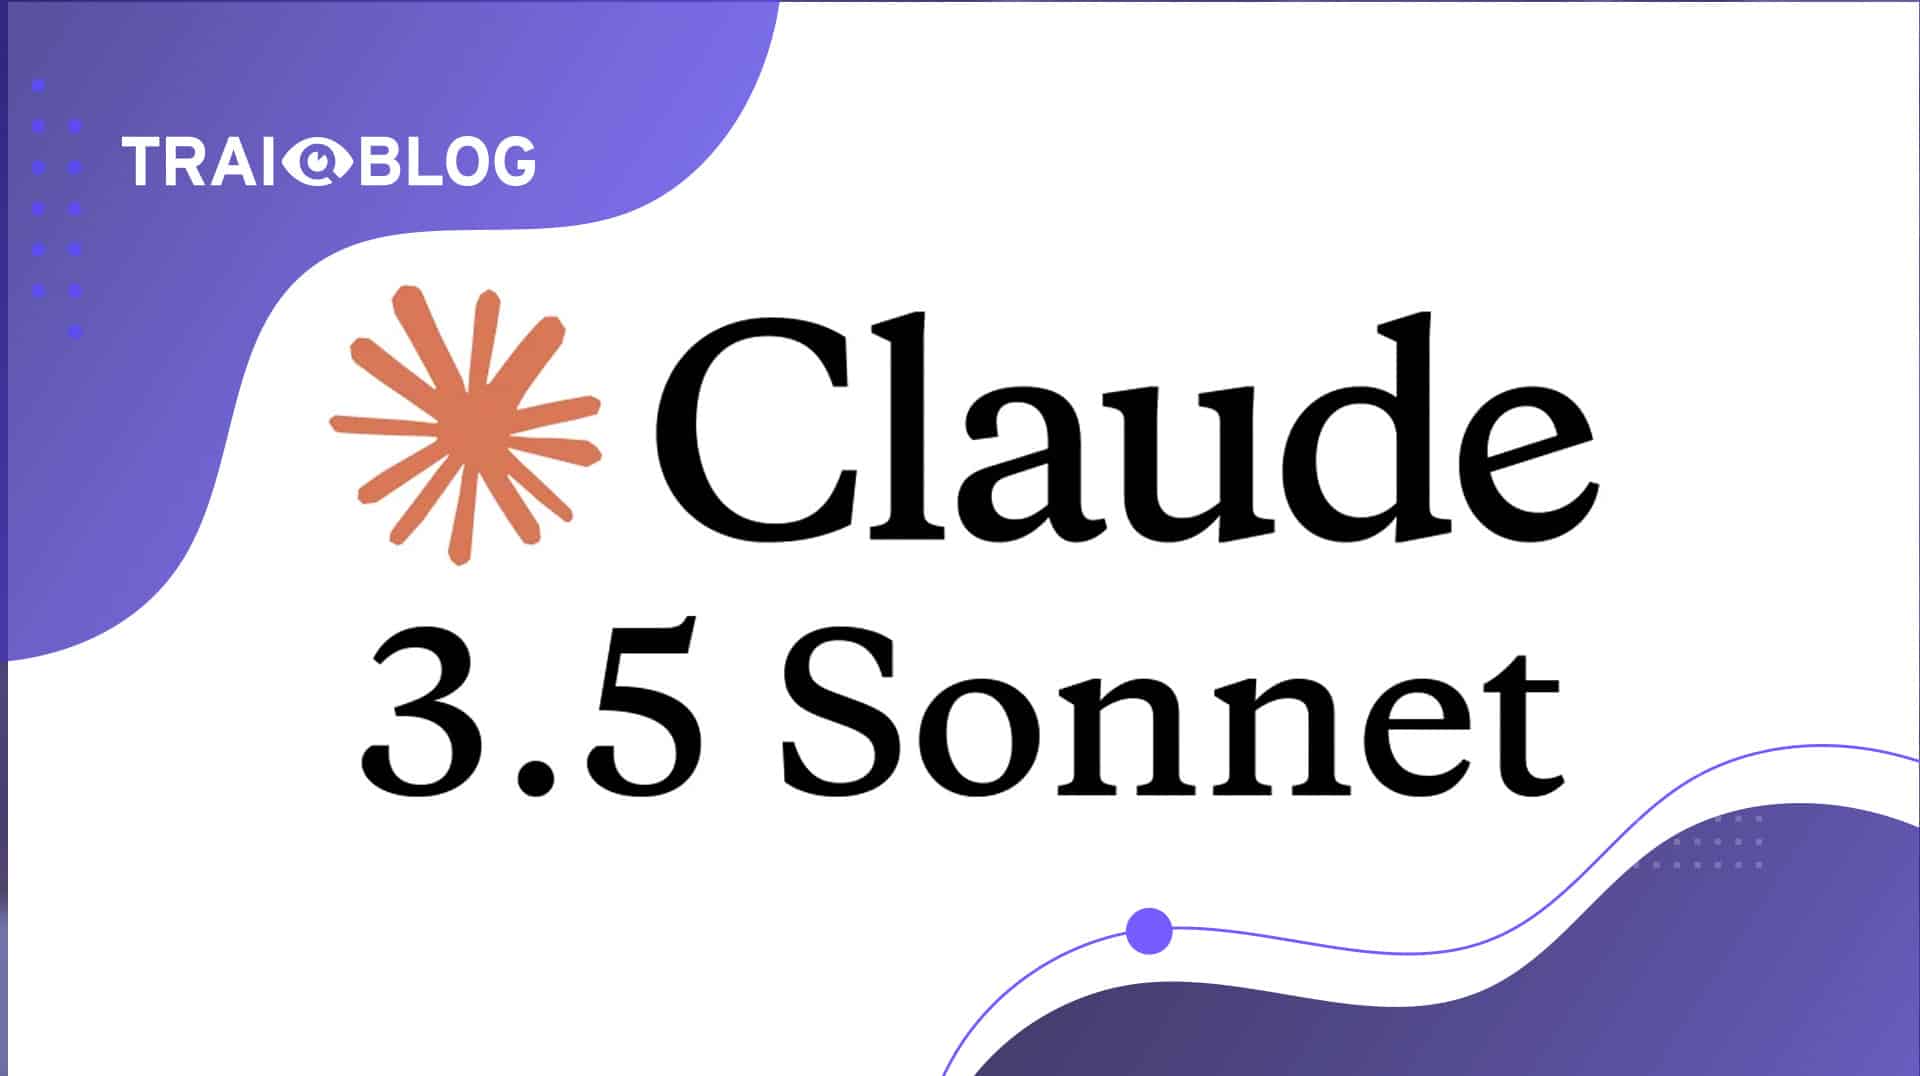 Anthropic, Claude 3.5 Sonnet’i Tanıttı